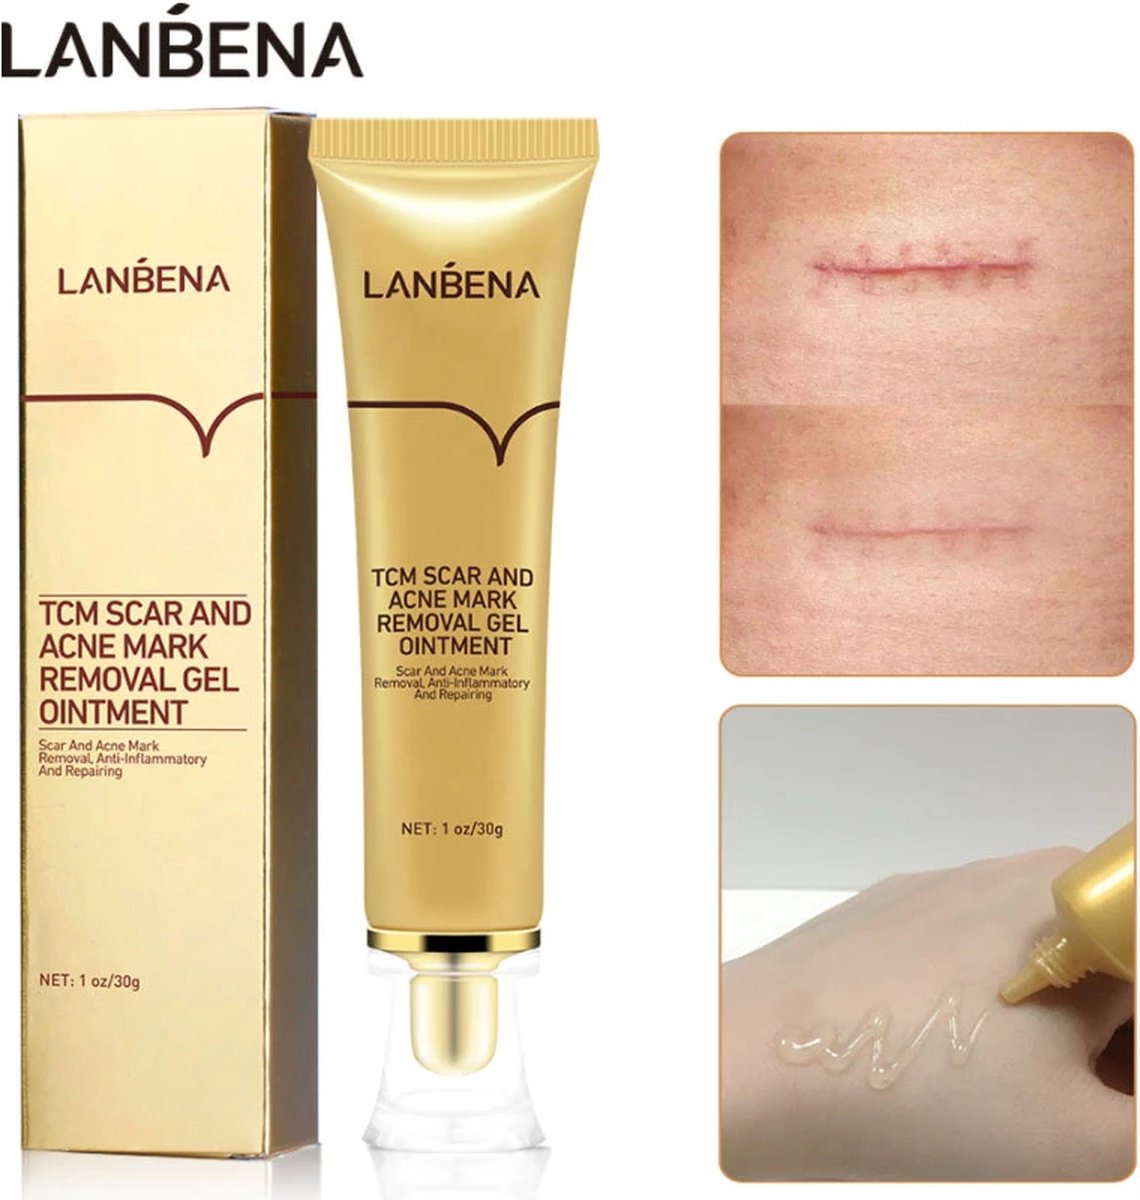 LANBENA Littekencrème - Vermindert zichtbaarheid van littekens – Acné en Striae littekens - Herstelt de huid - Litteken crème tube 30ml